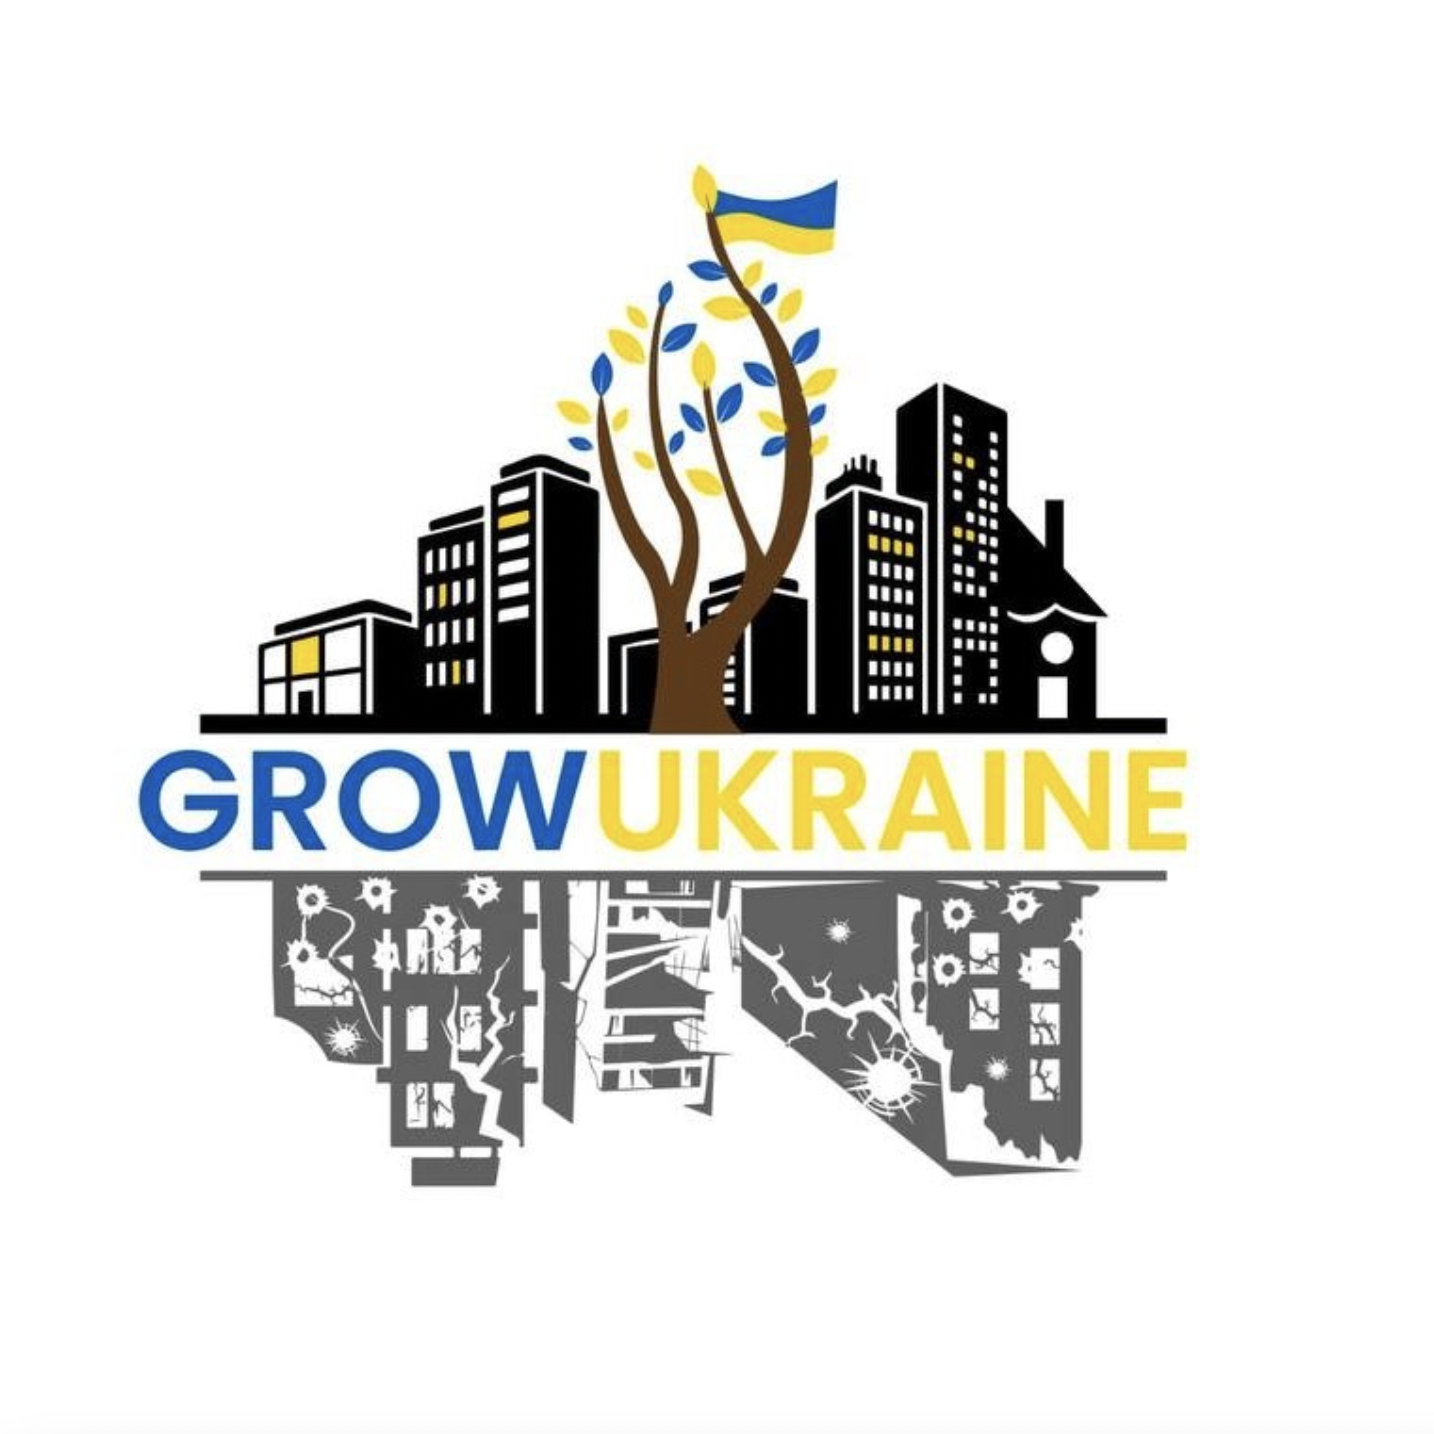 Support Grow Ukraine